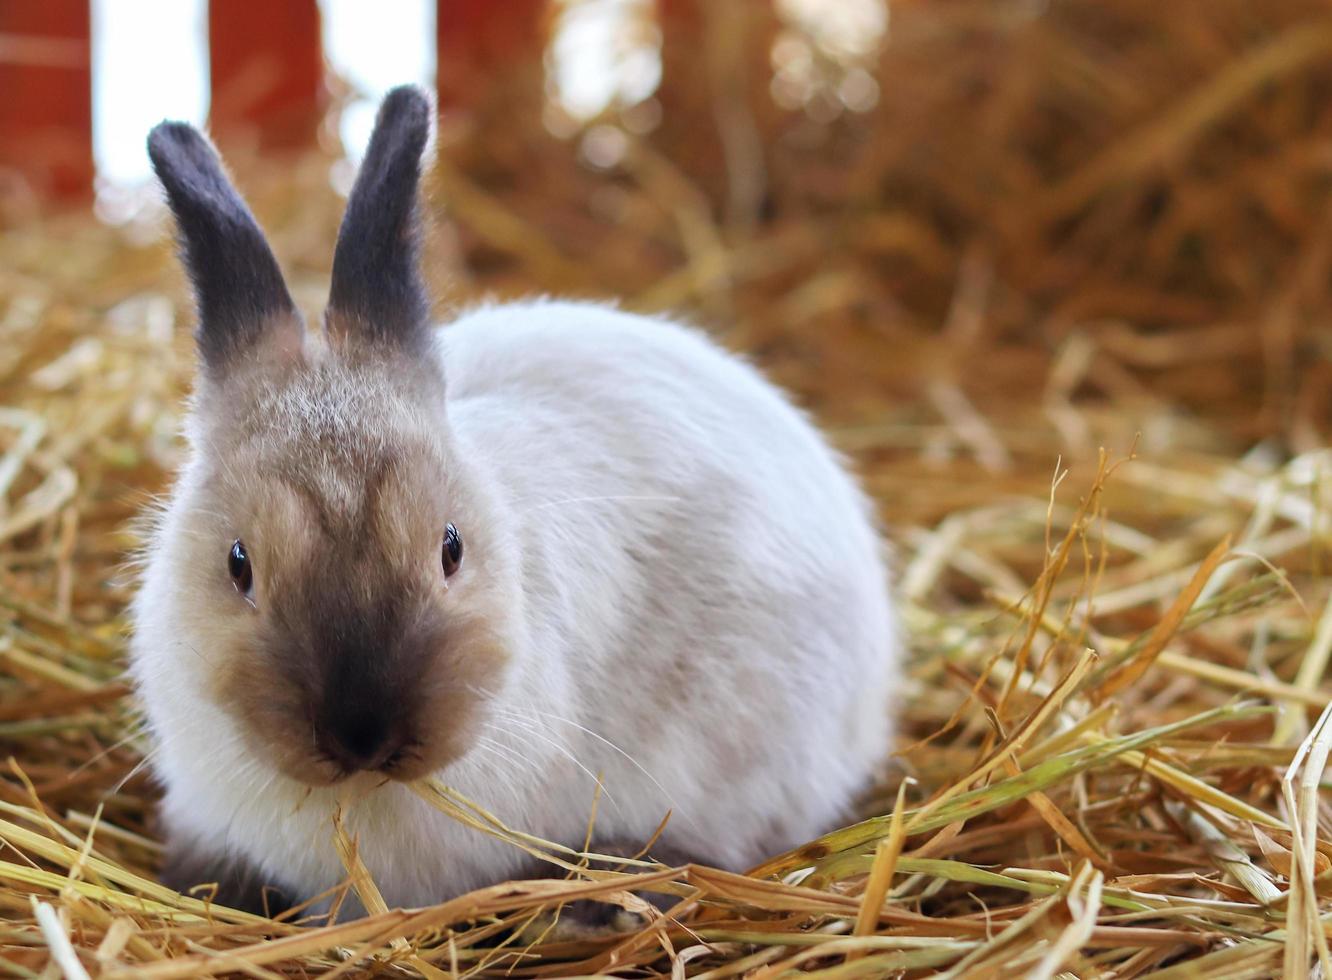 Baby bunny in straw photo